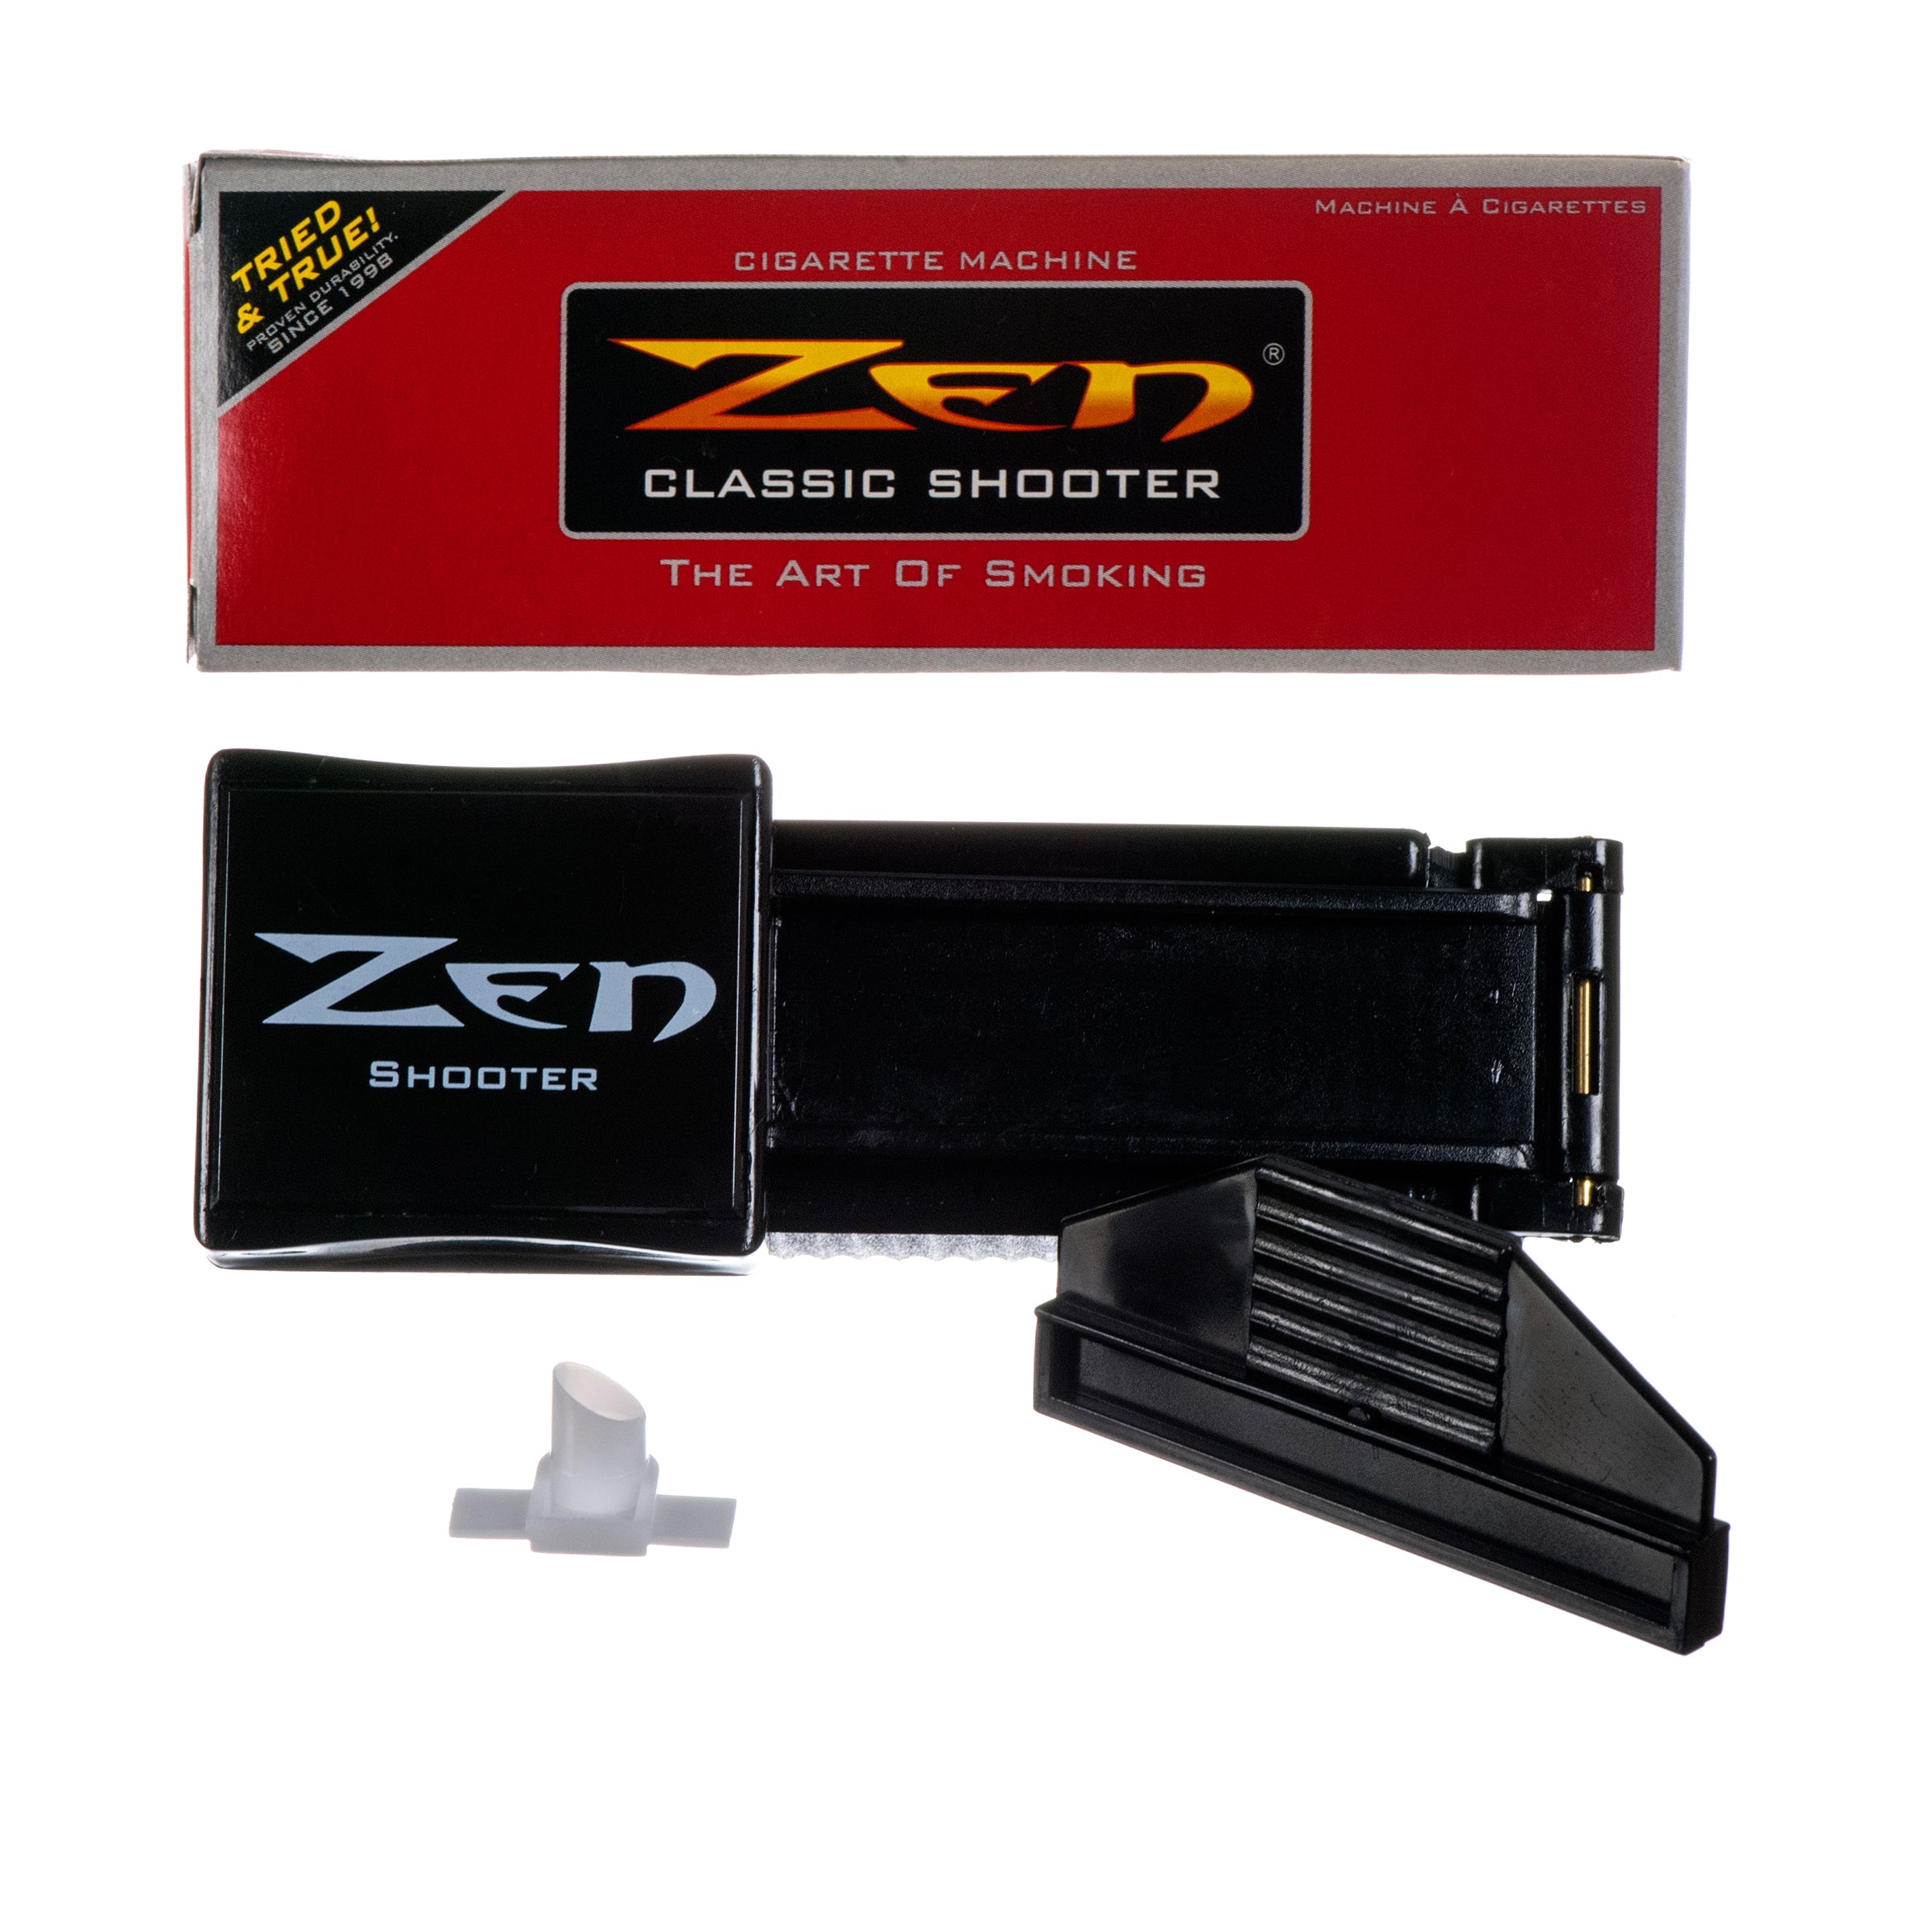 Zen Shooter / Injector Cigarette Machine